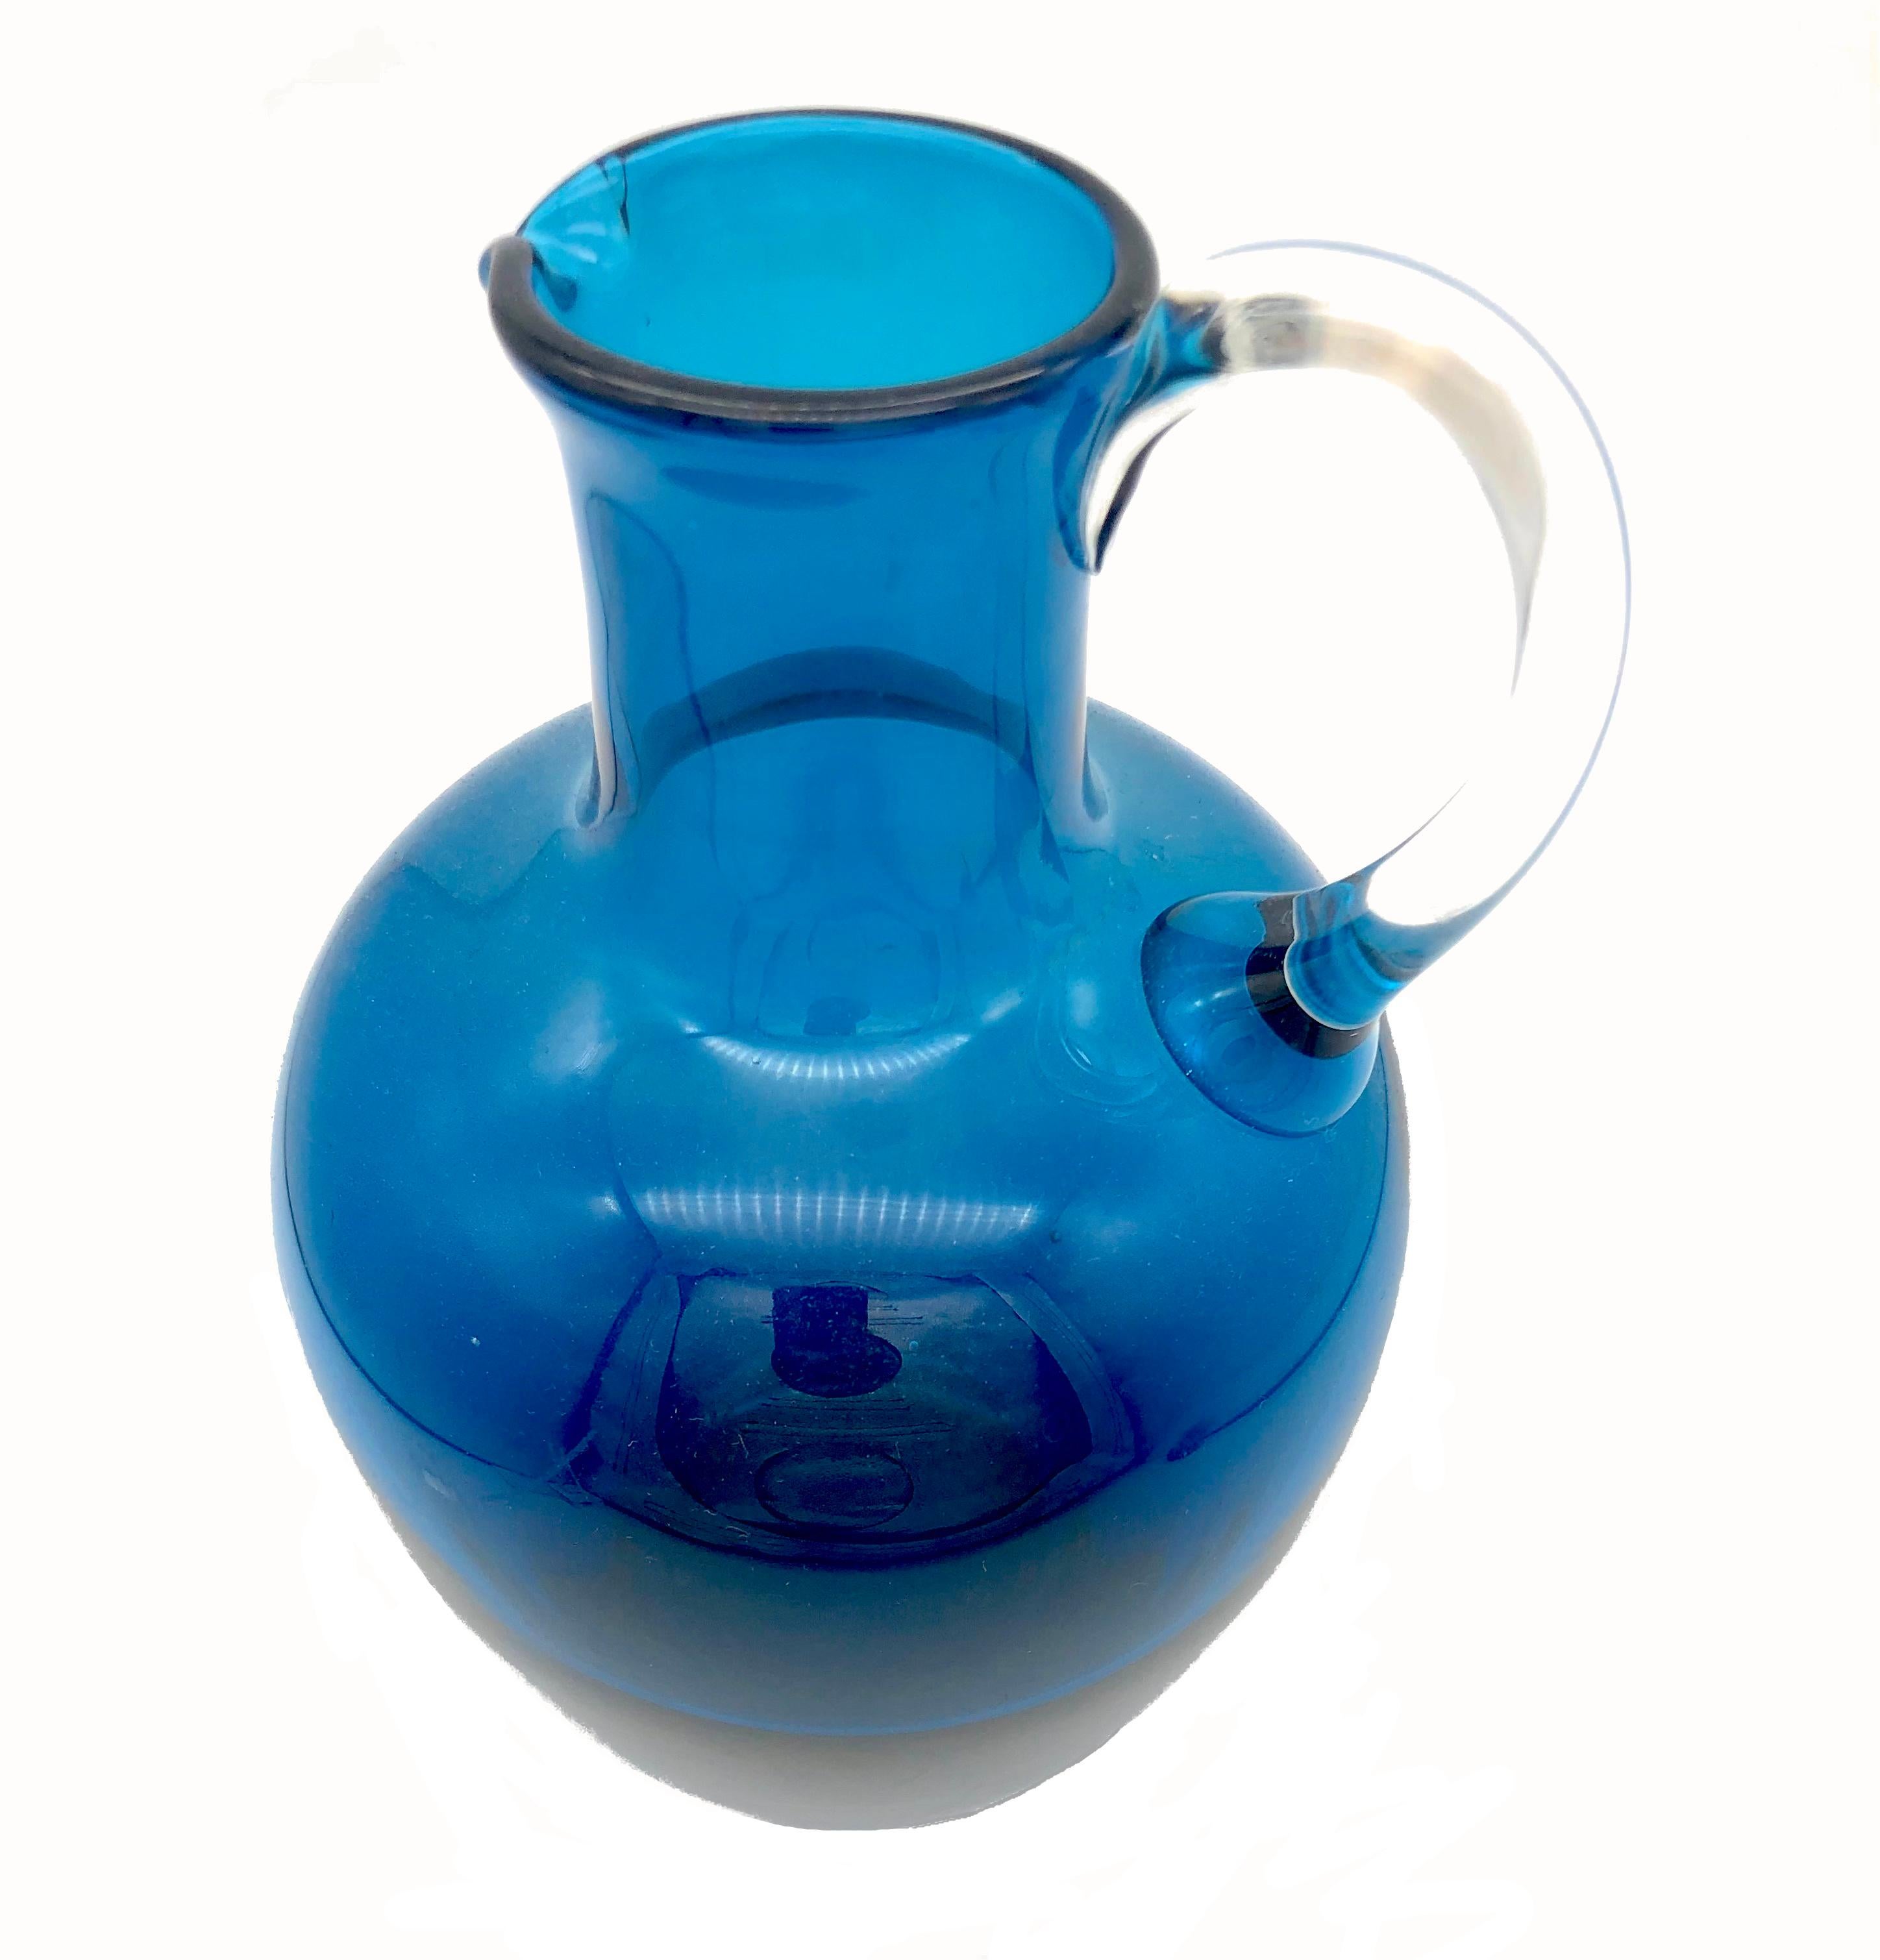 Dieser elegante blaue Glaskrug wurde um 1960 in Handarbeit hergestellt. Der elegante und schlichte Grundriss ist typisch für diese Zeit. Die blaue Farbe des Gefäßes beginnt unten dunkler und wird nach oben hin heller. Der transparente Henkel wirkt